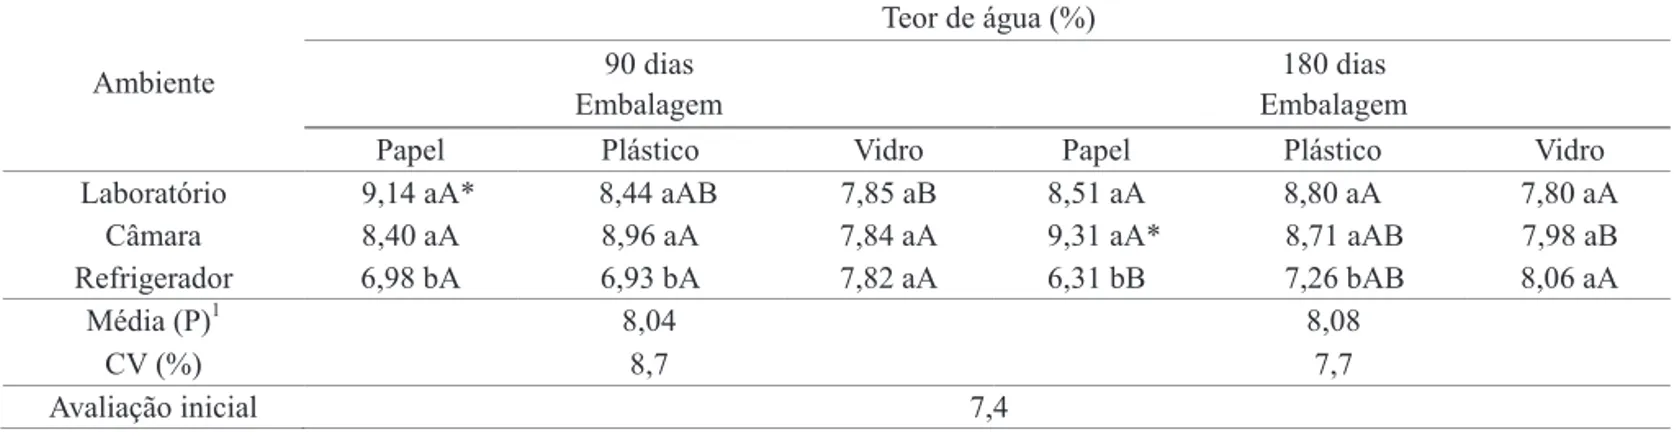 Tabela 1. Teor de água (%) de sementes de pinhão manso sob diferentes condições de armazenamento e de embalagem